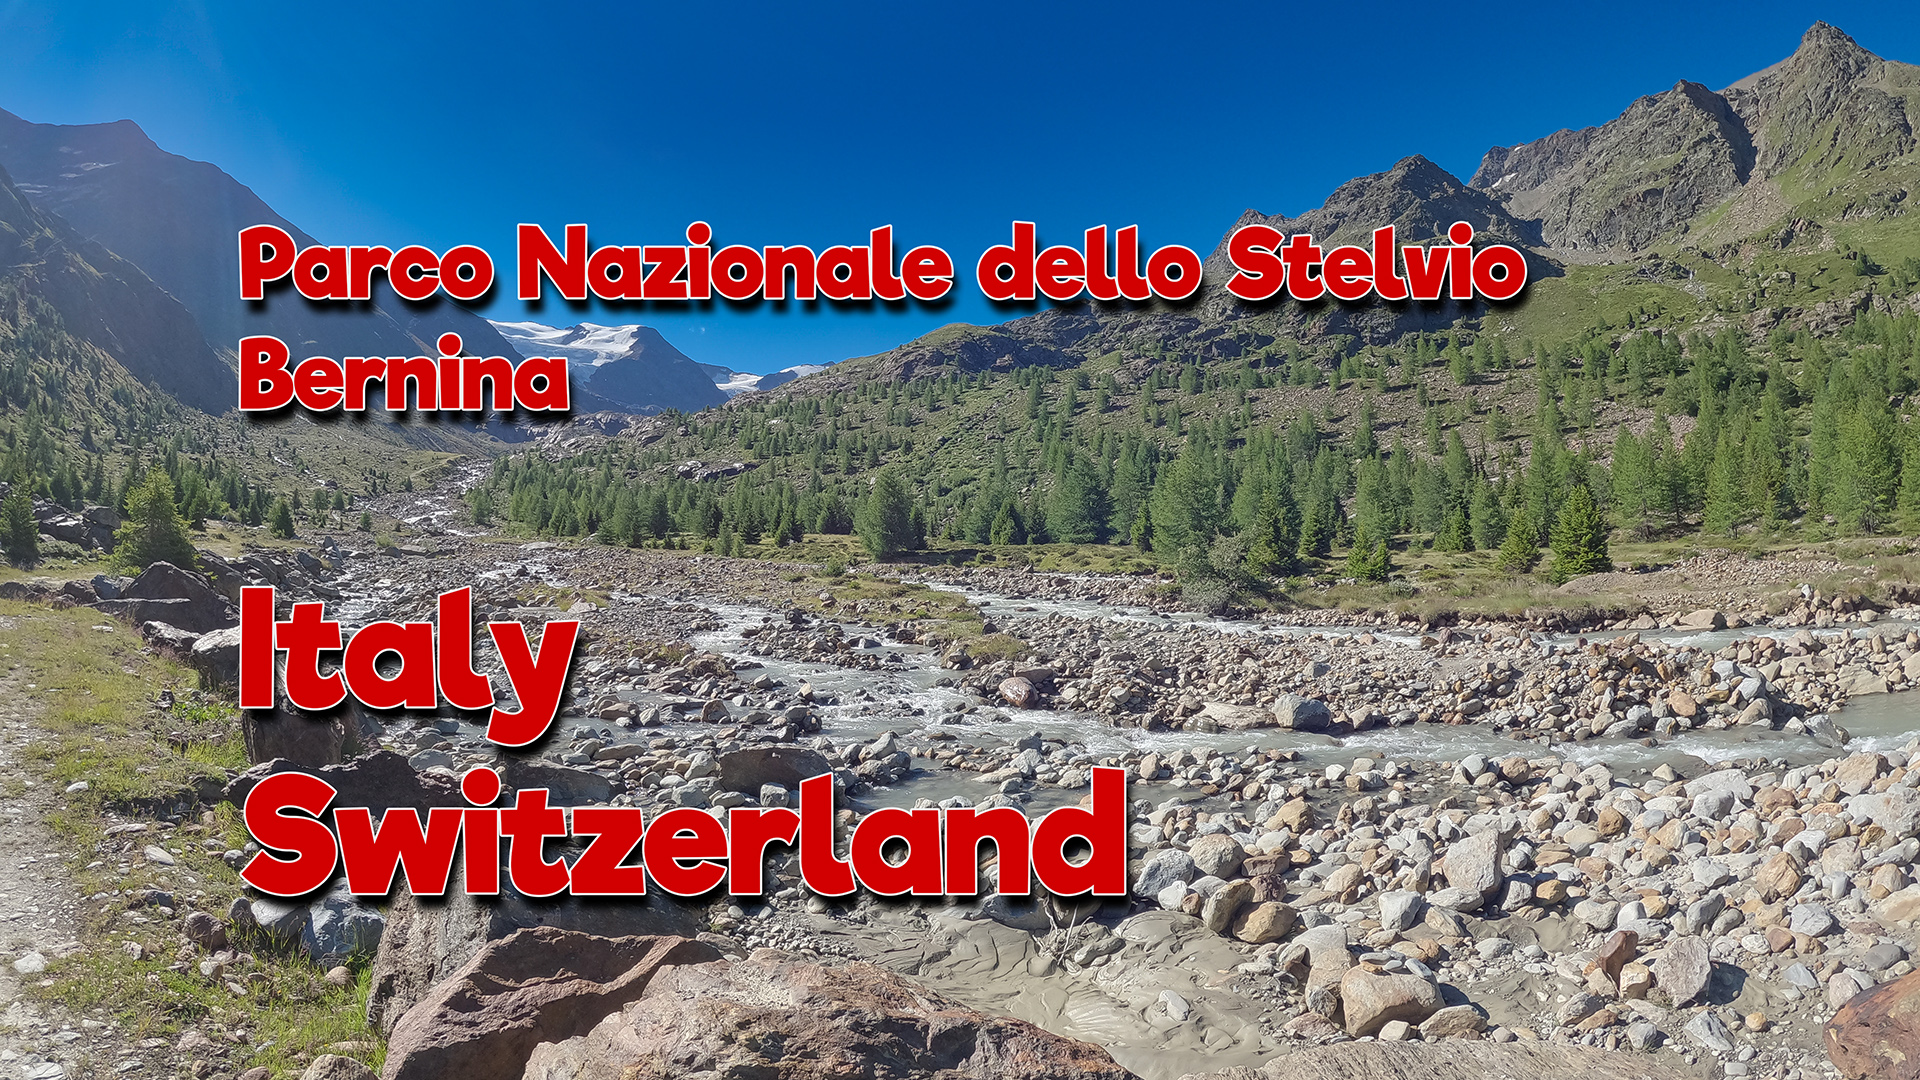 Parco Nazionale dello Stelvio (Italy, Switzerland)